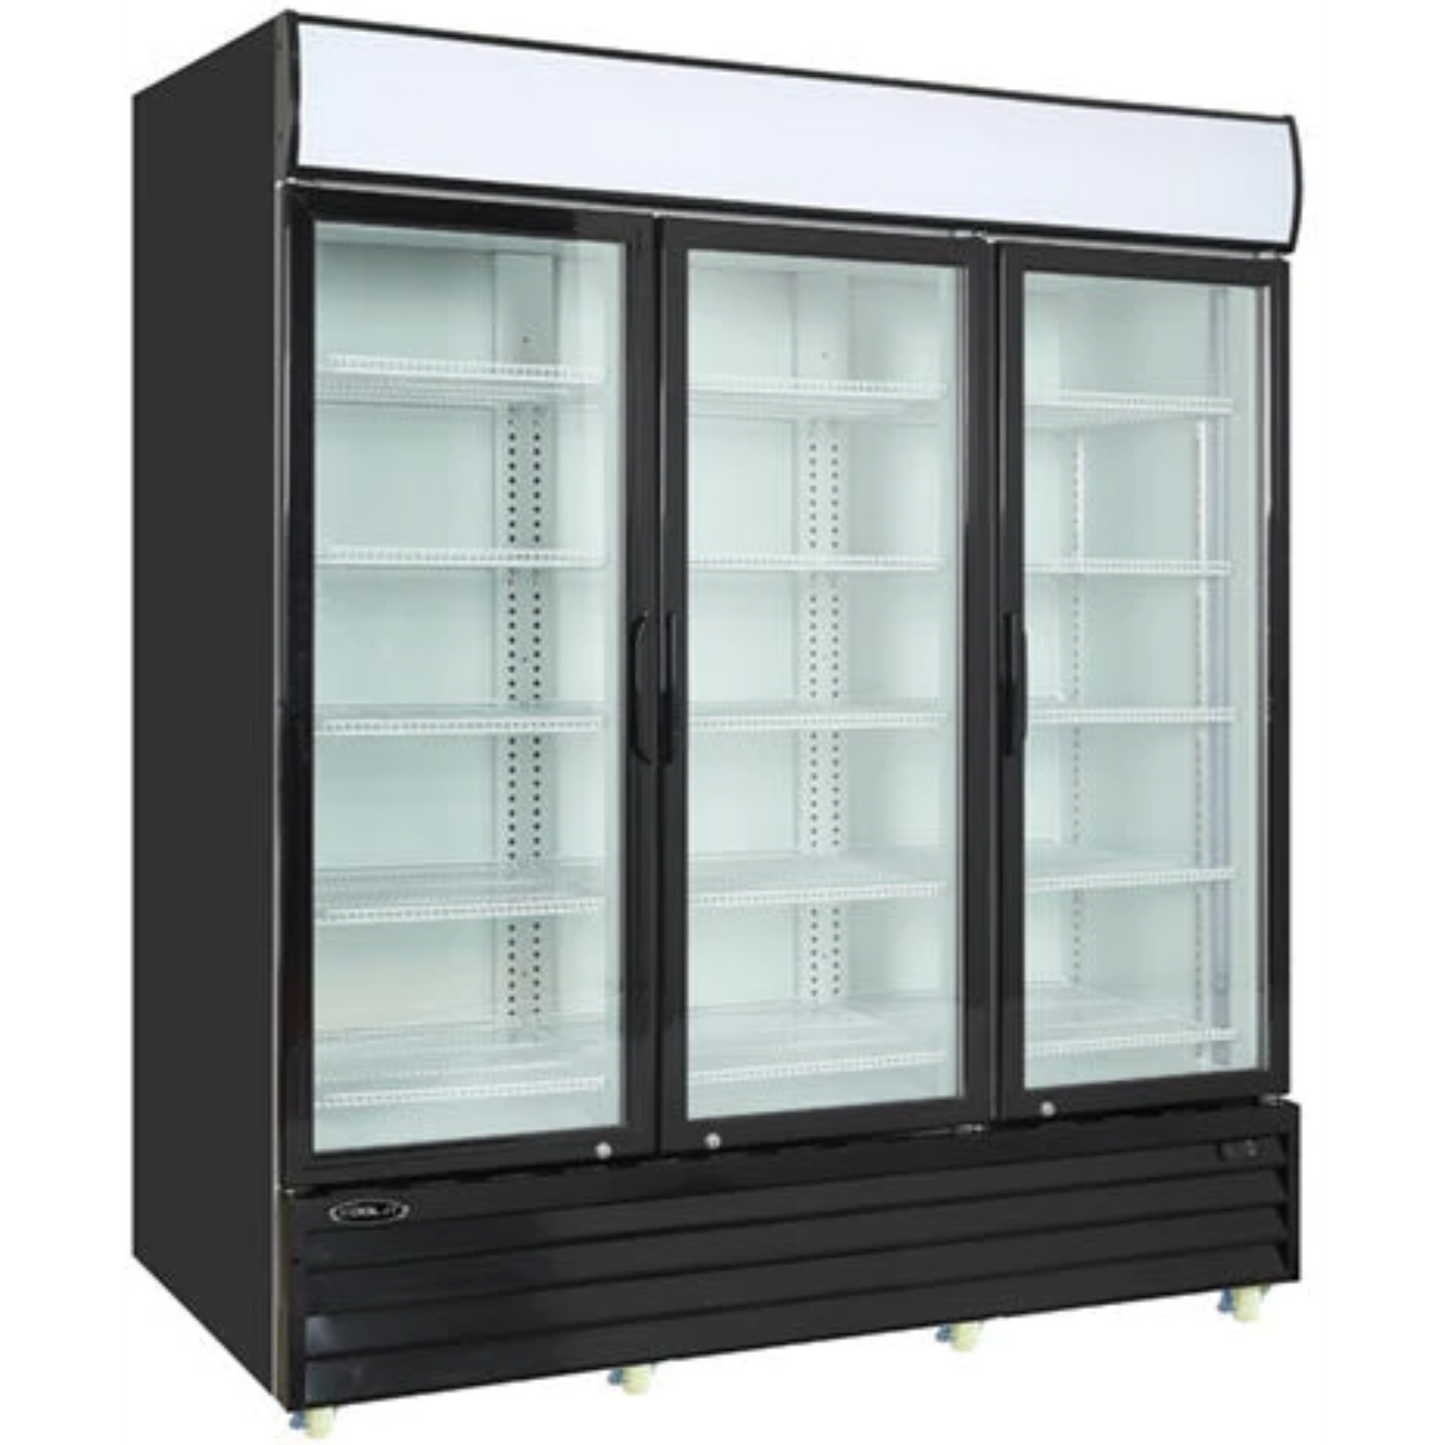 Kool-It KGM-75 78" Triple Swing Glass Doors Merchandiser Refrigerator